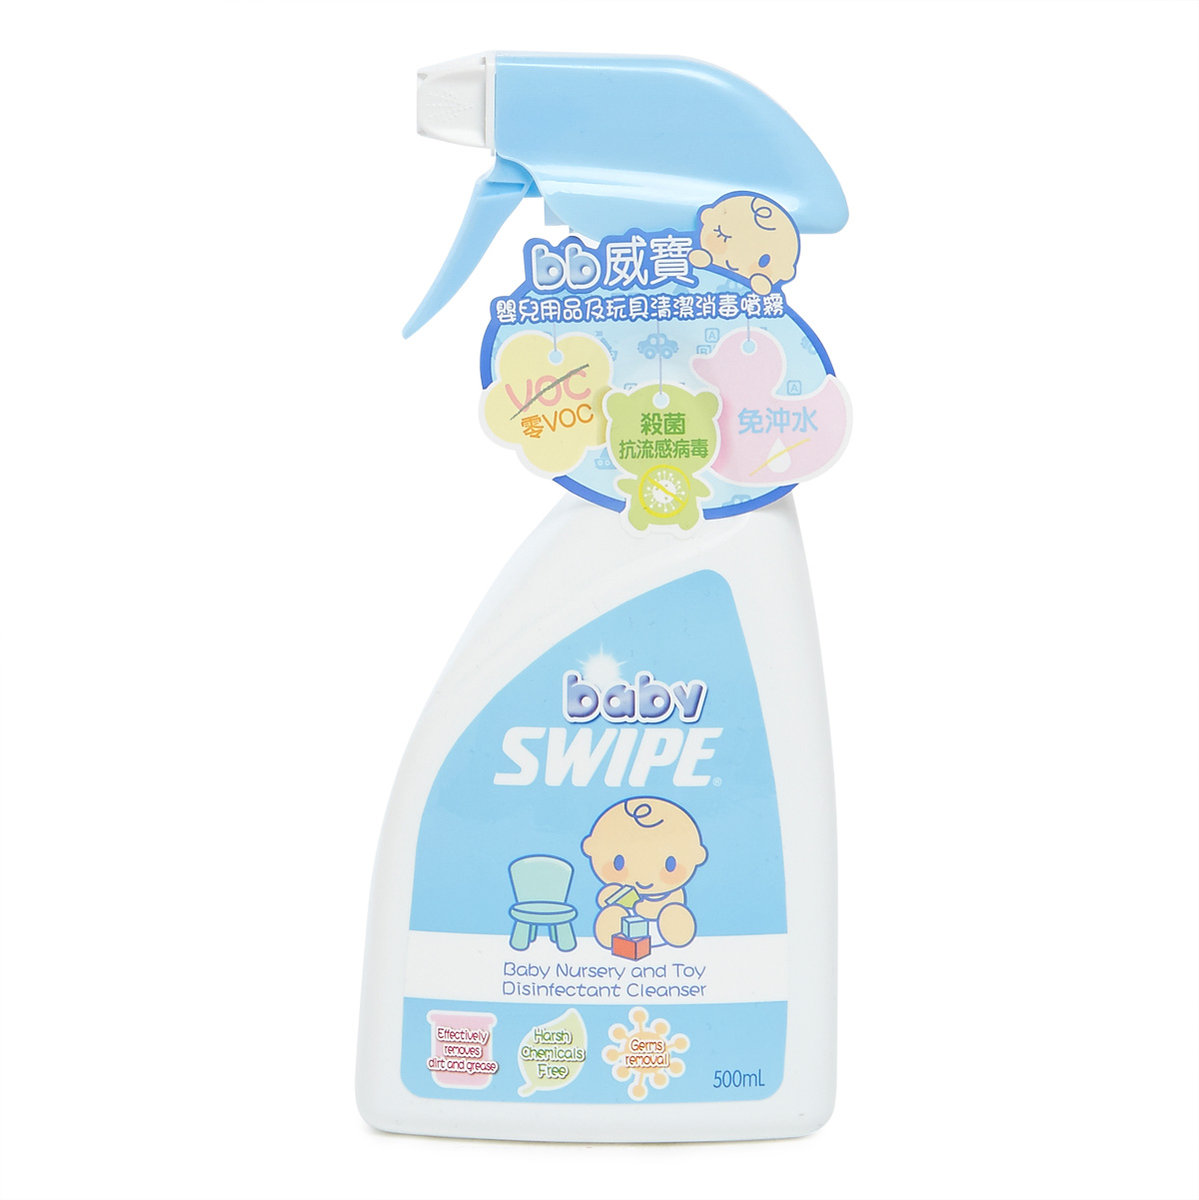 Baby Swipe 嬰兒用品及玩具清潔消毒噴霧-500ml